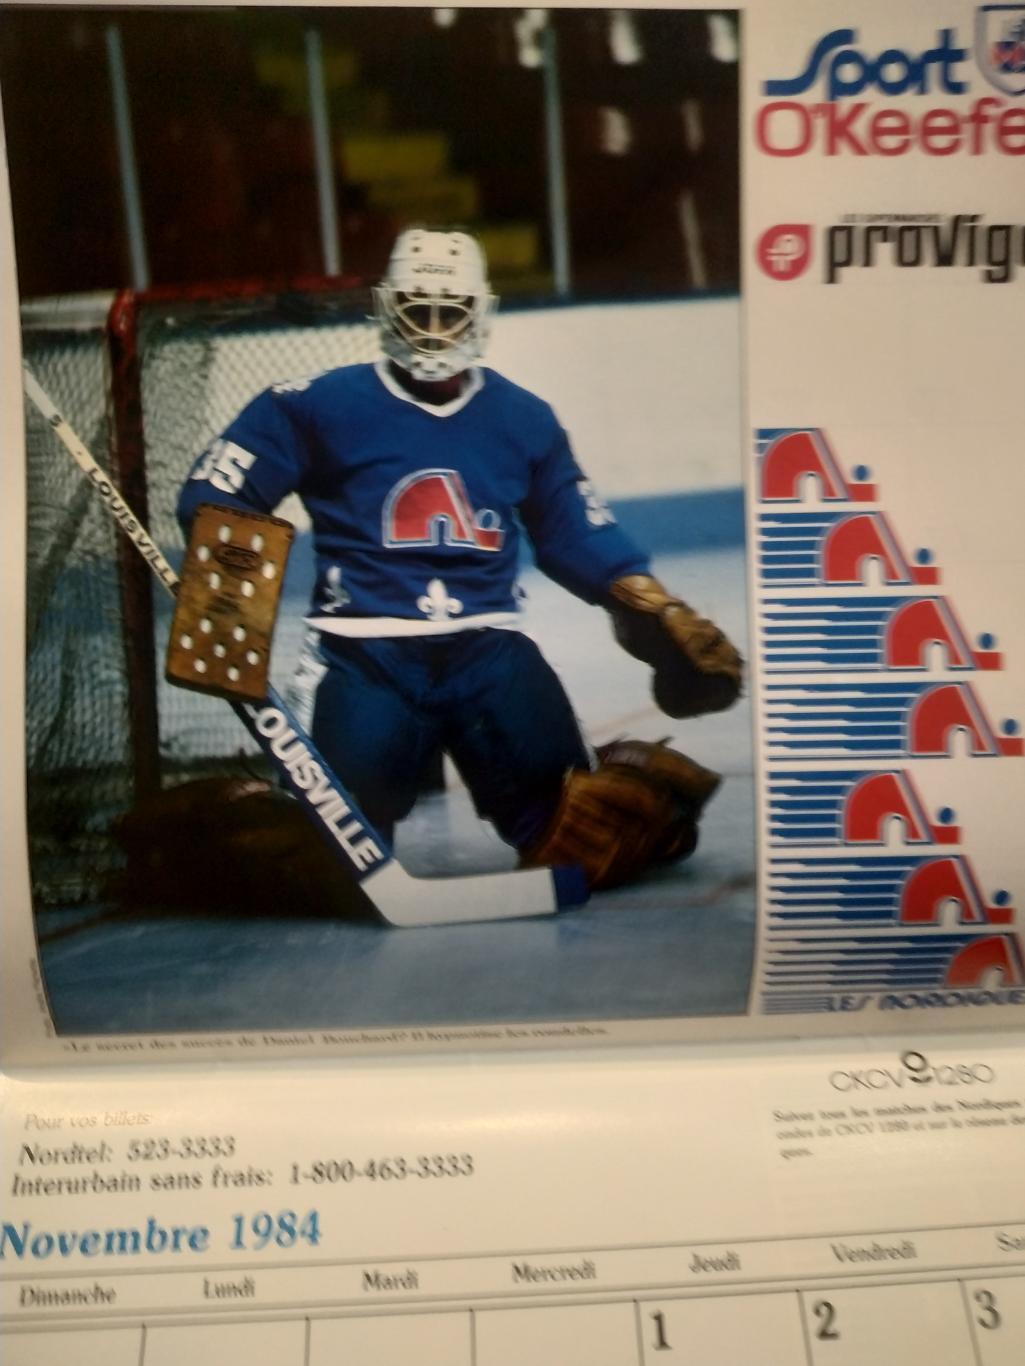 ХОККЕЙ КАЛЕНДАРЬ НХЛ КВЕБЕК НОРДИКС 1984 NHL LES NORDIQUES OFFICIAL CALENDAR 6